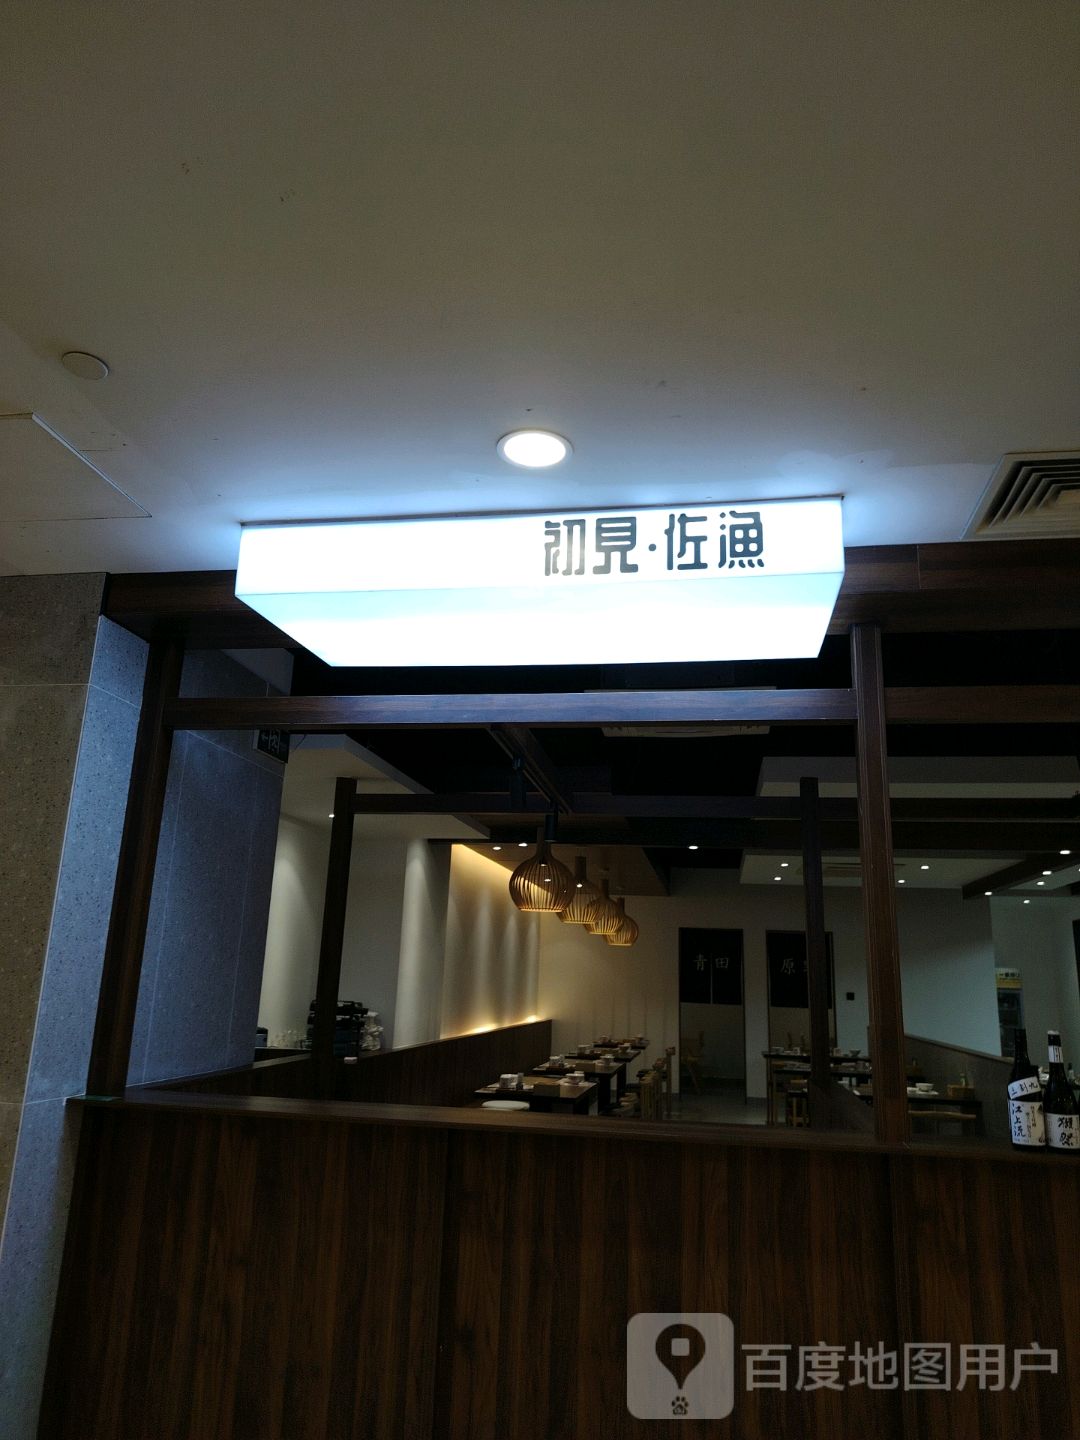 初见·料理铁板烧(中央商场河西店)